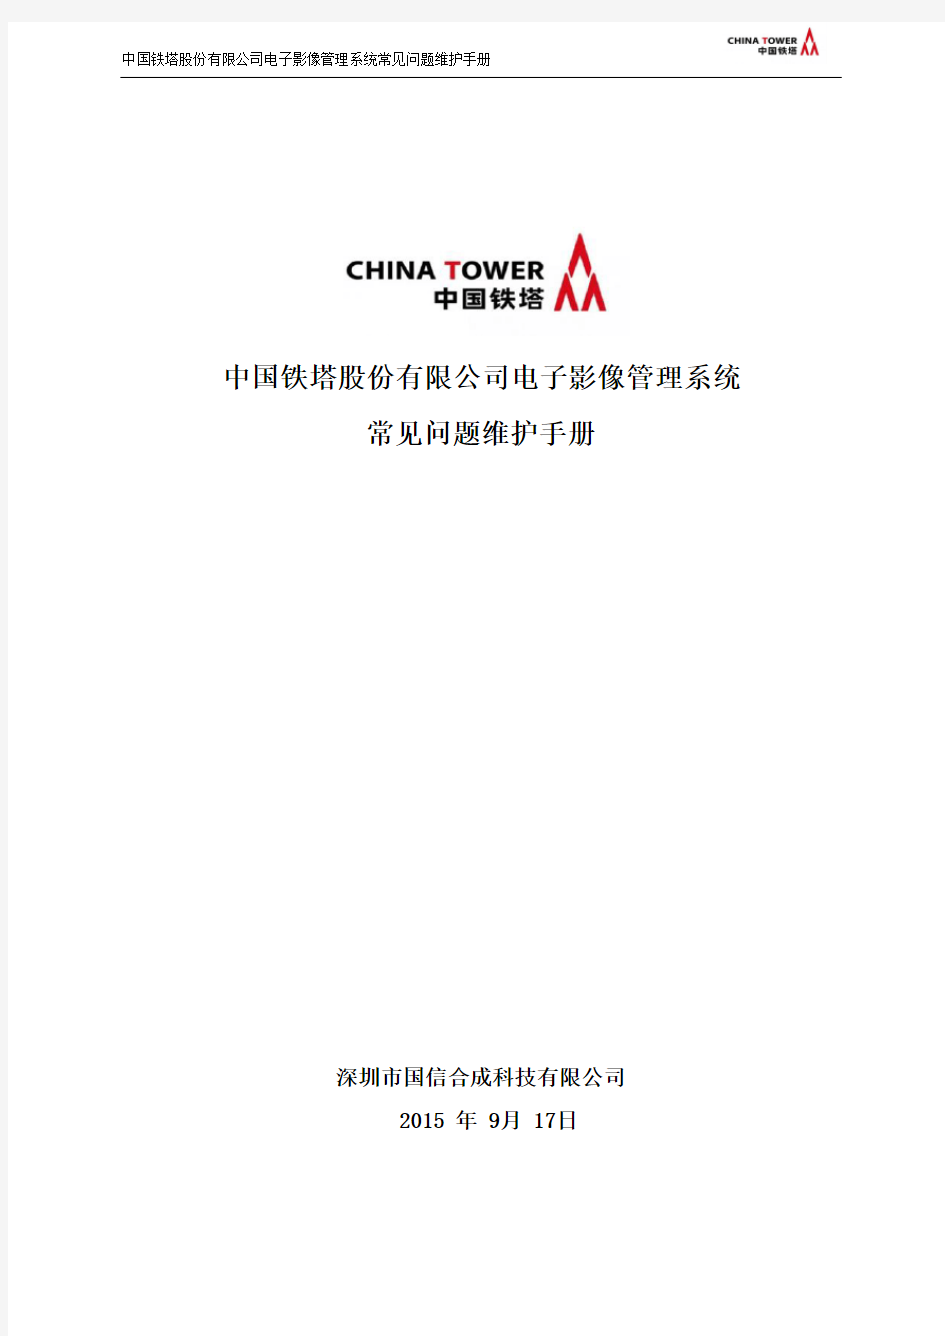 中国铁塔股份有限公司电子影像管理系统常见问题维护手册V1.0